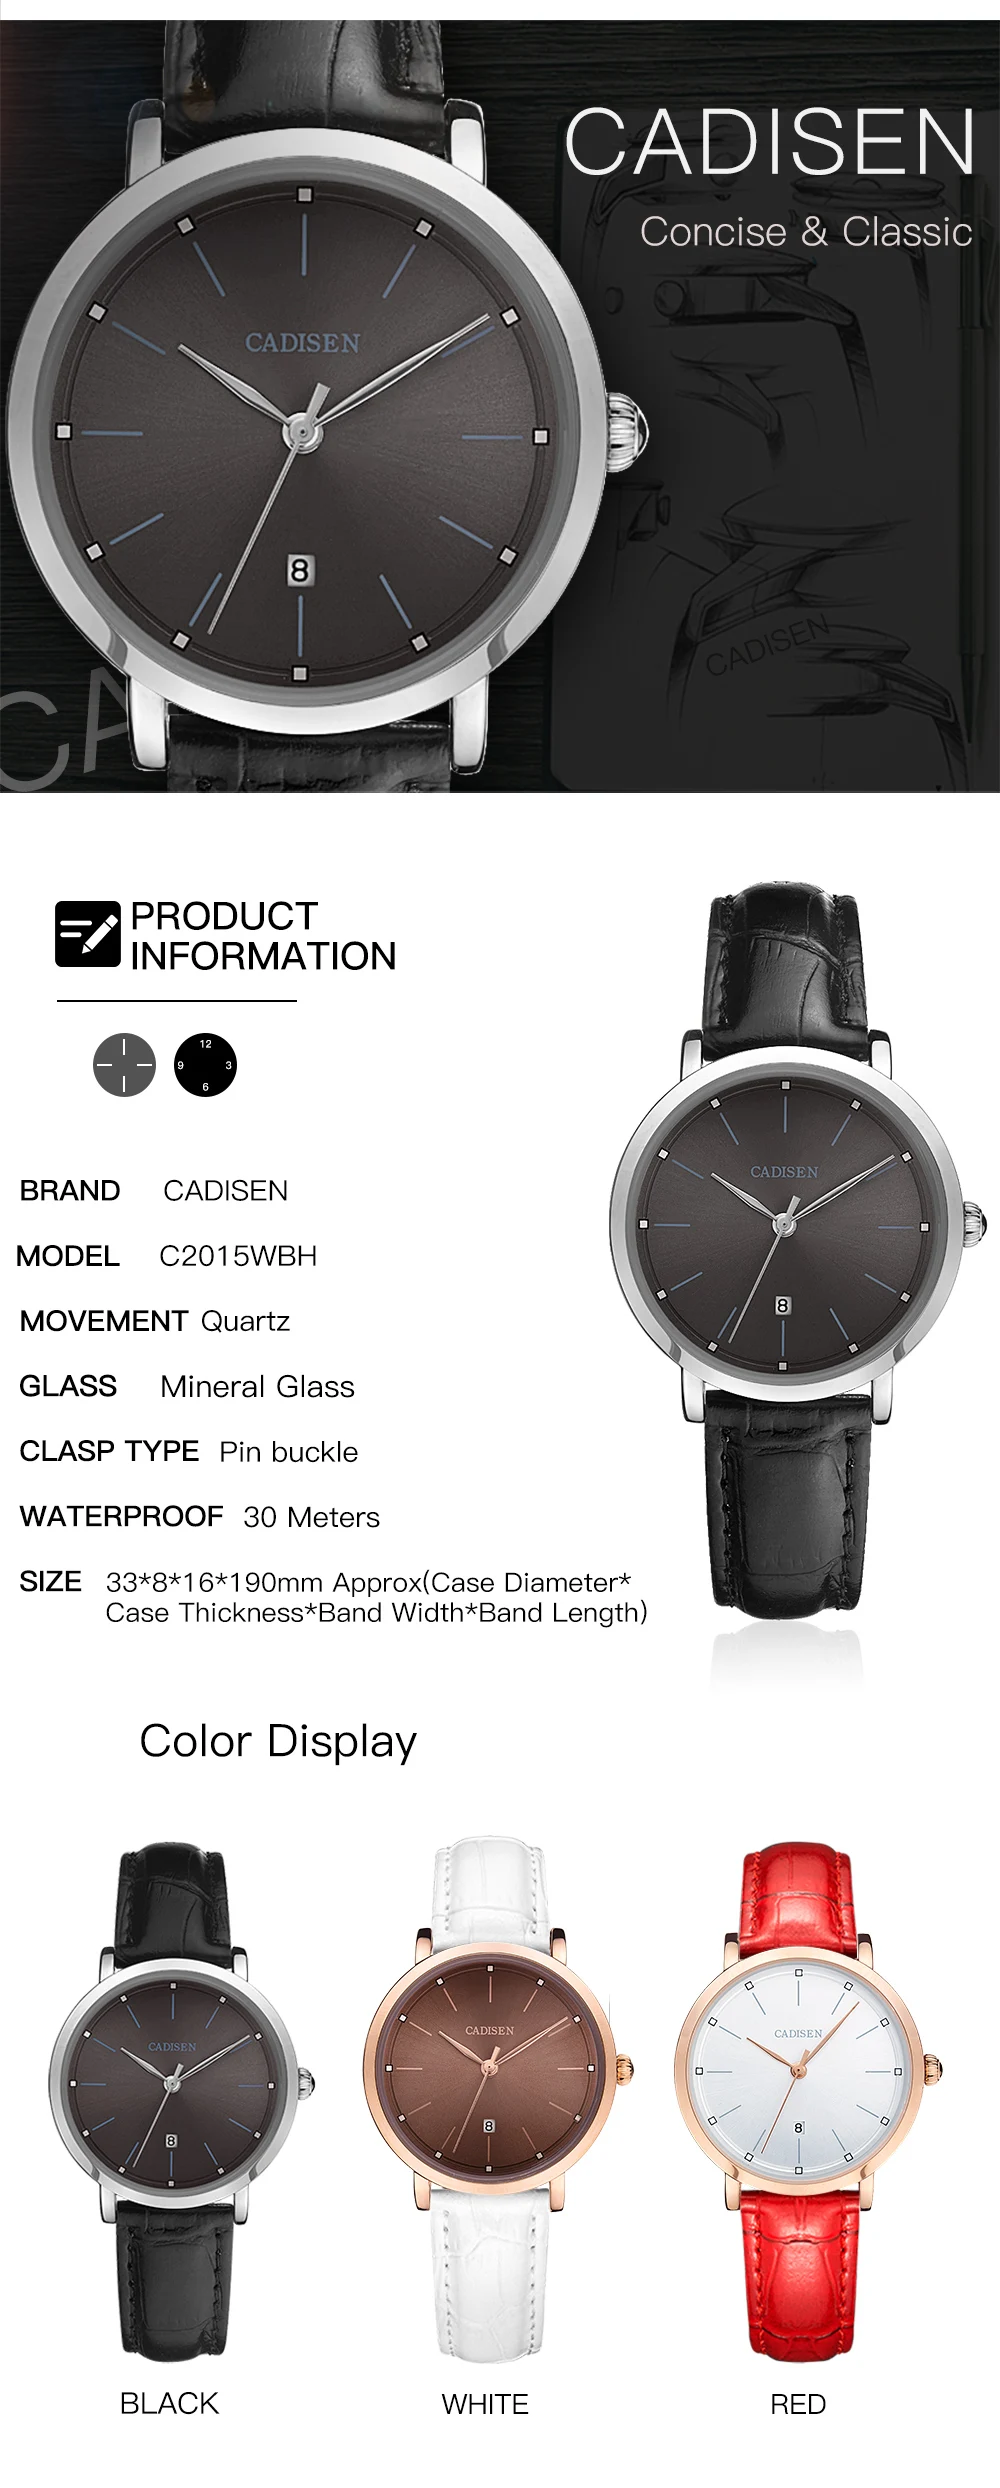 Cadisen новые модные брендовые часы женские часы-люкс Женские Аналоговые кварцевые наручные часы из искусственной кожи relojes mujer подарок